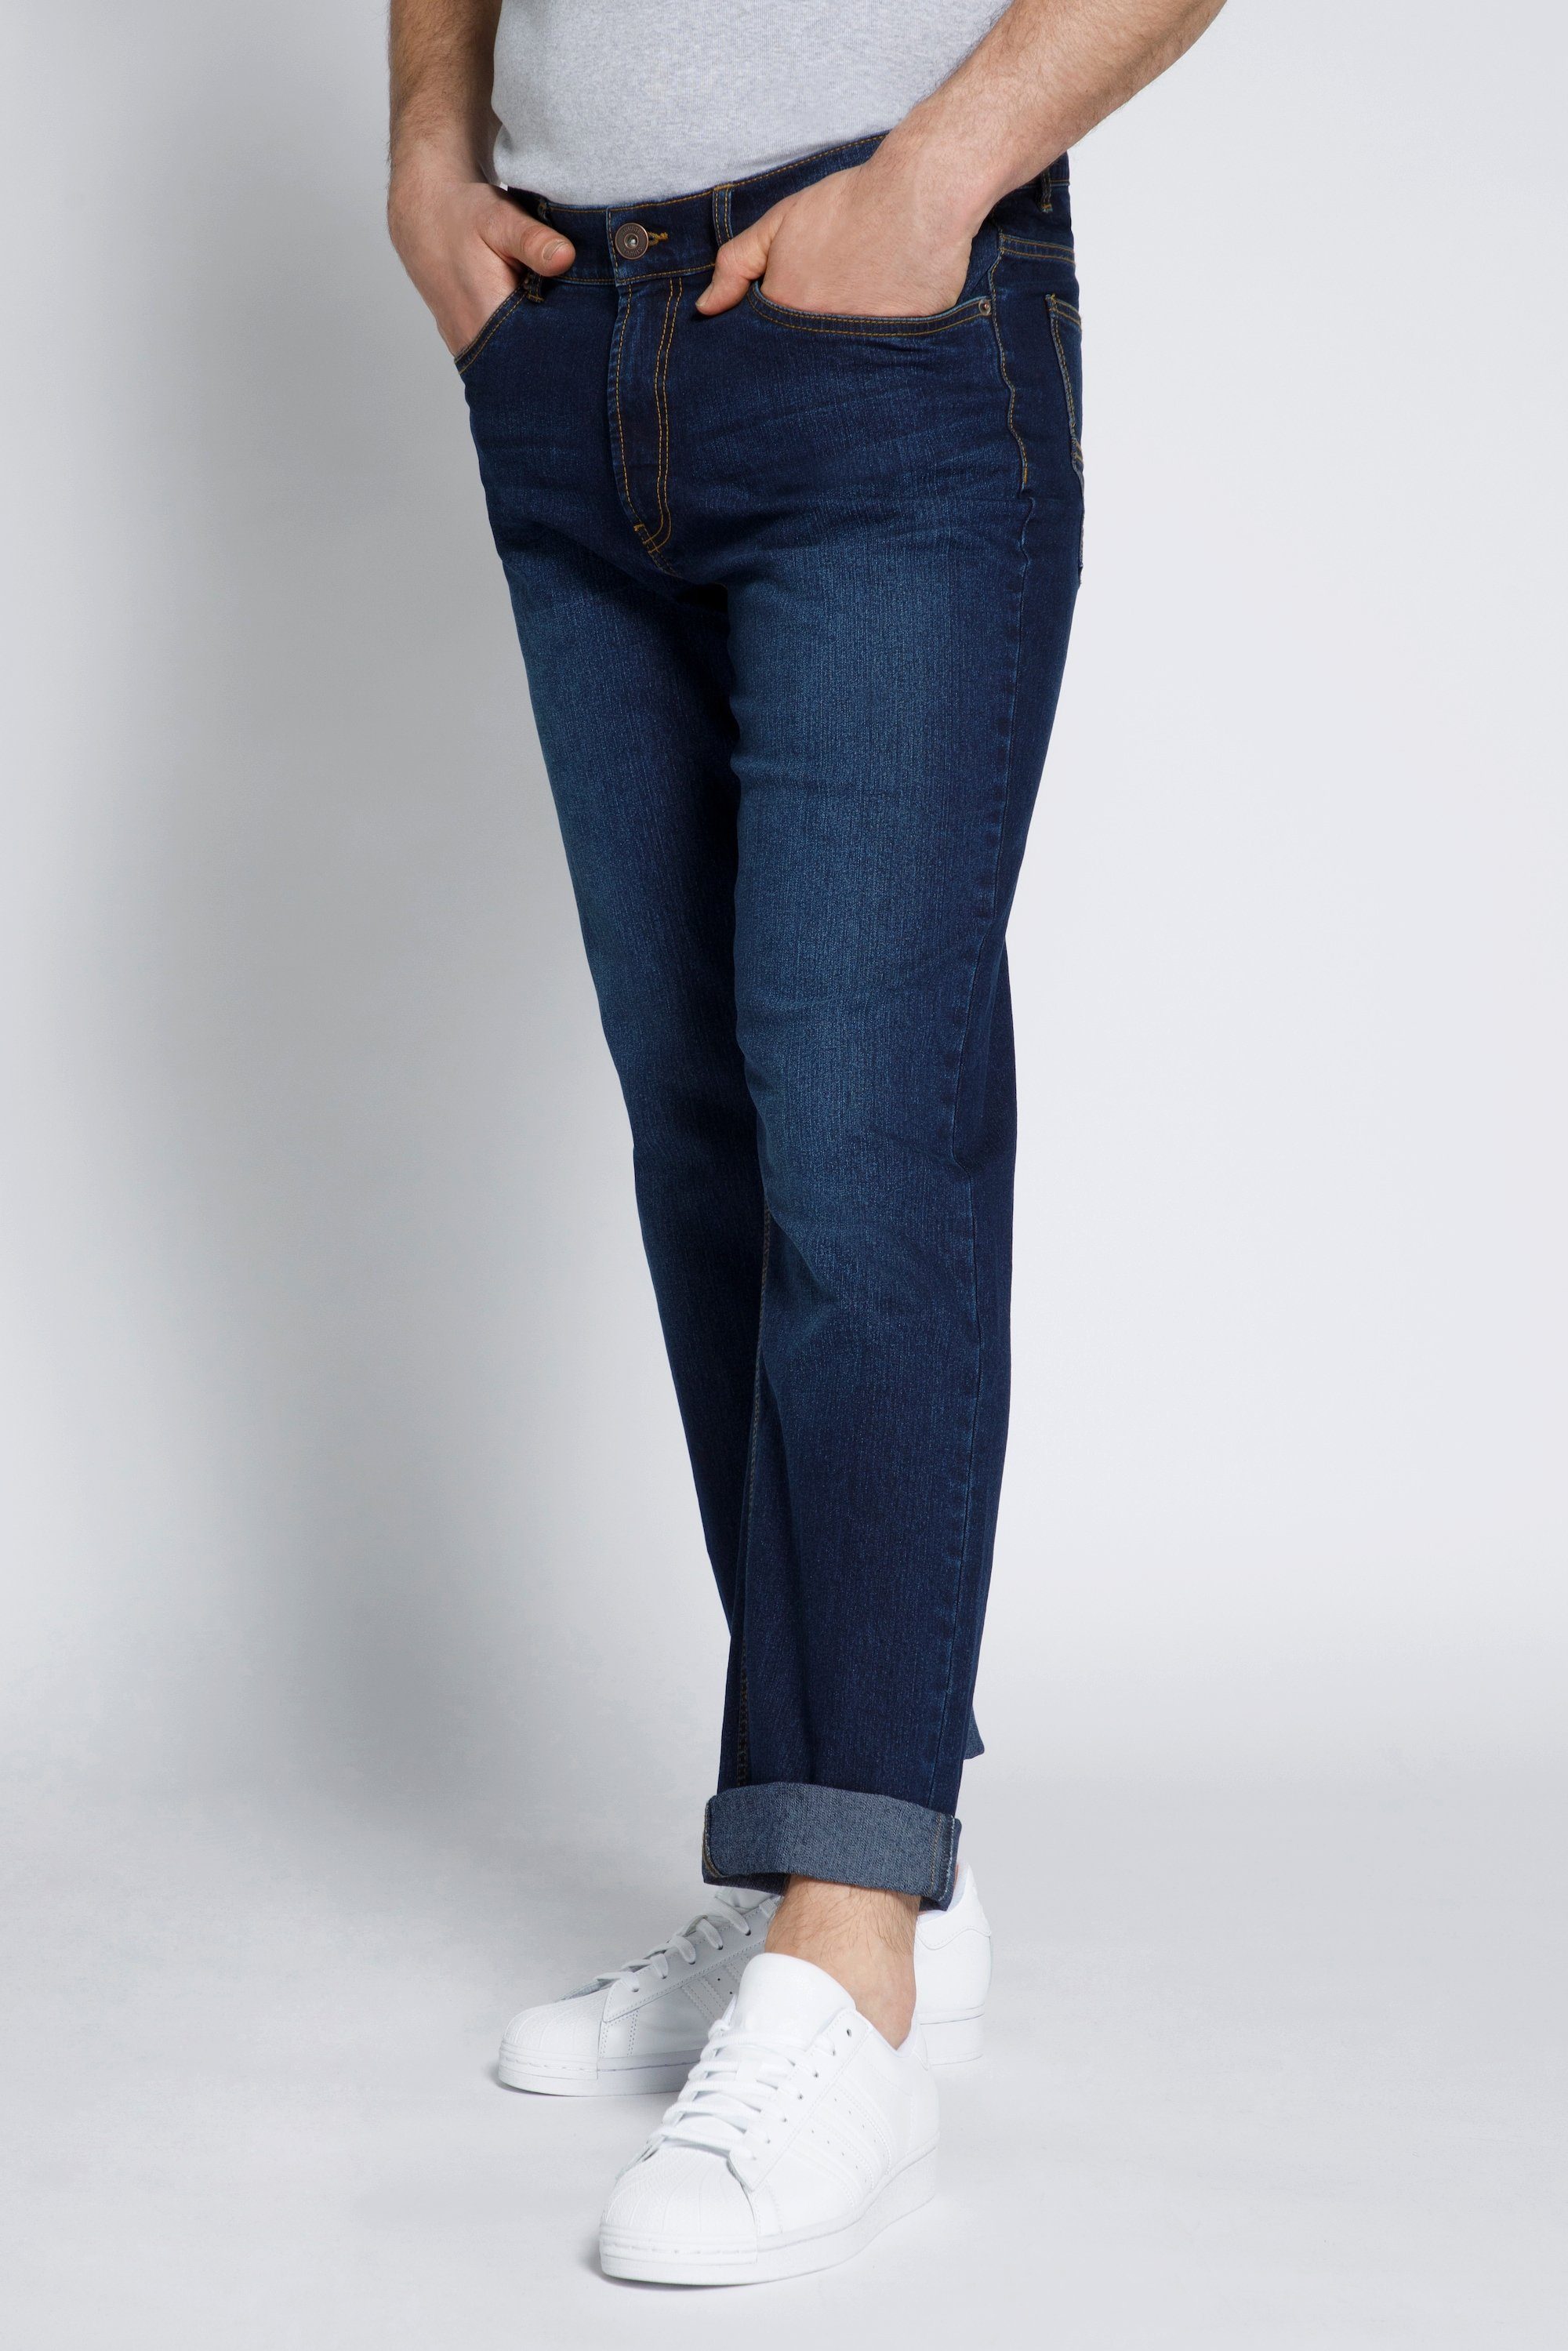 STHUGE Bauch Regular Pocket 5 STHUGE Fit Jeans Fit 5-Pocket-Jeans